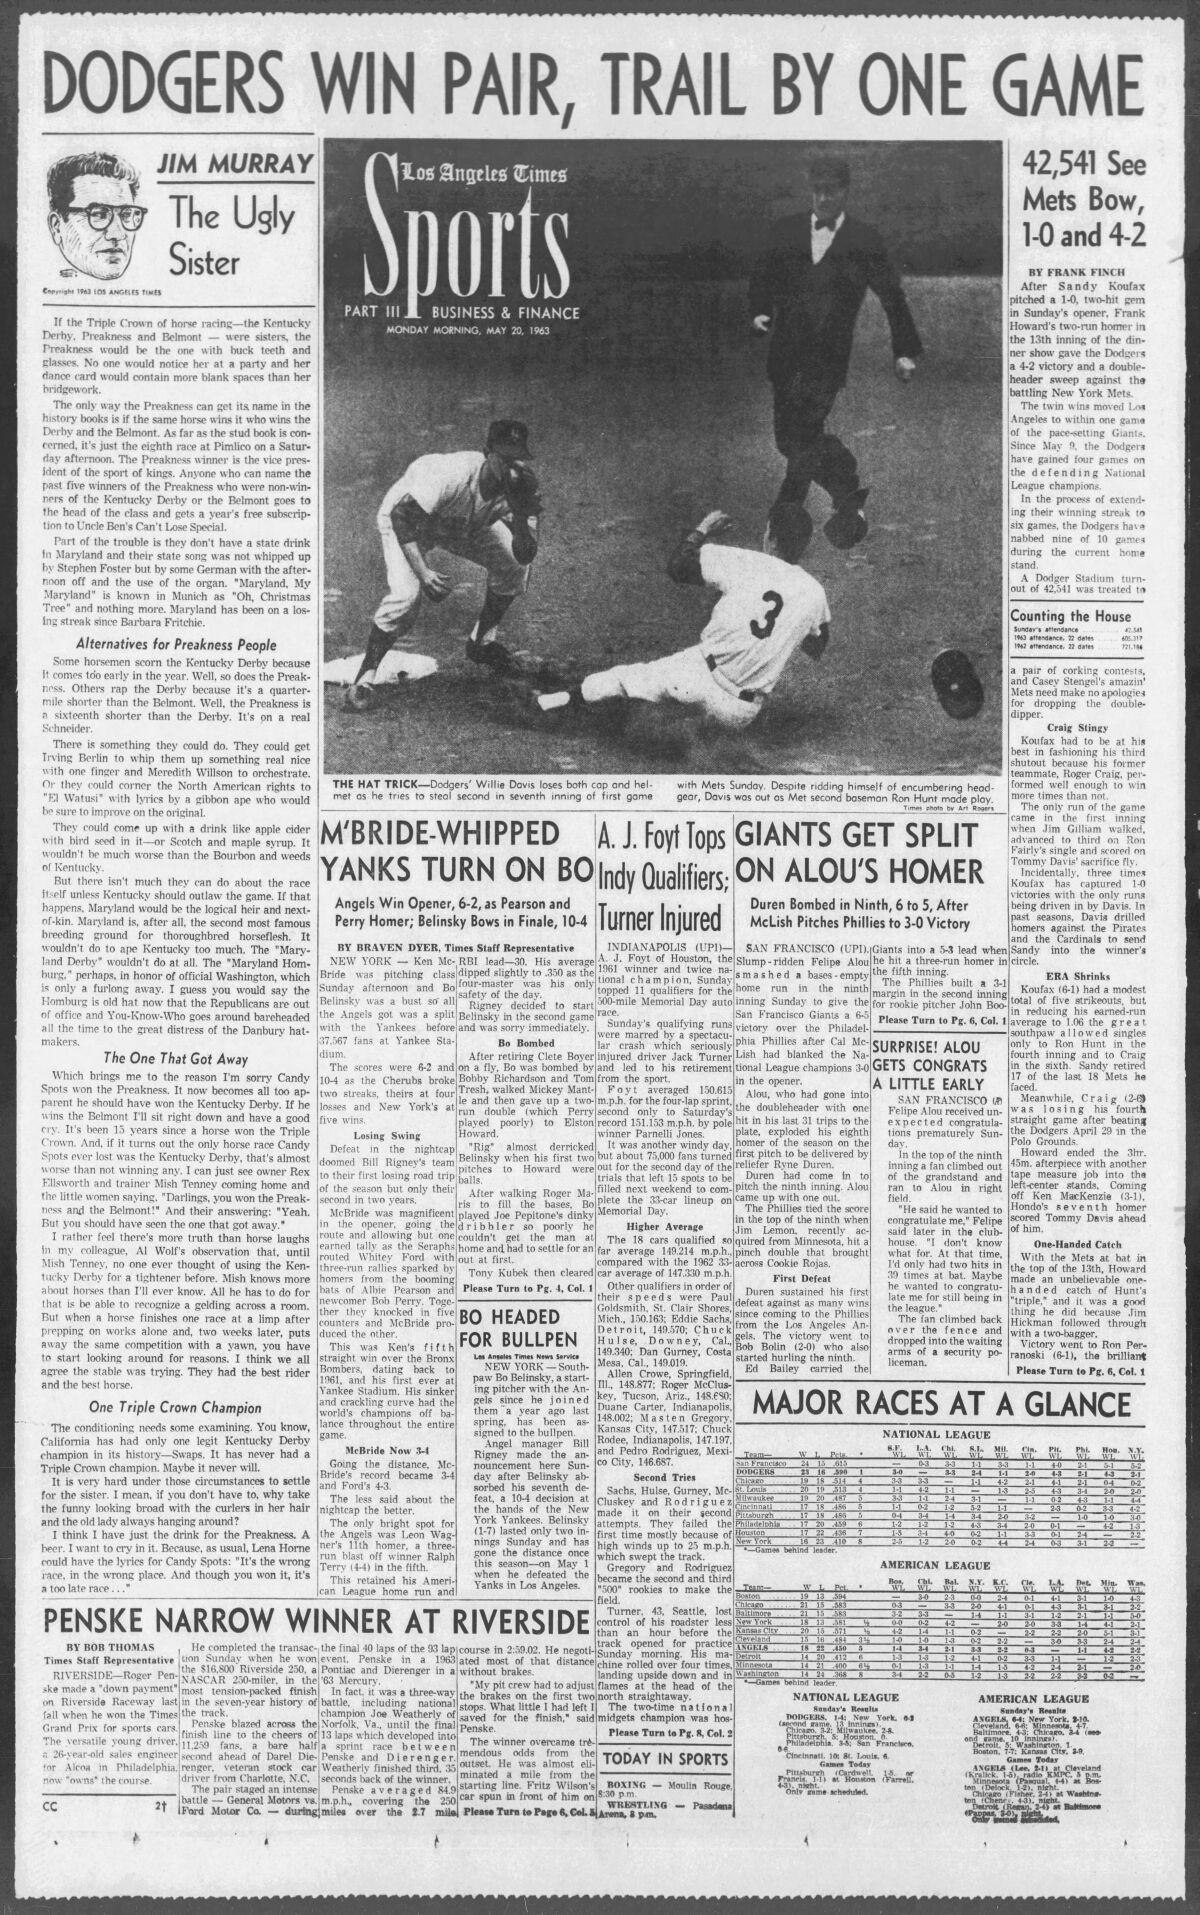 الصفحة الأولى لقسم الرياضة Los Angeles Times في 20 مايو 1963.